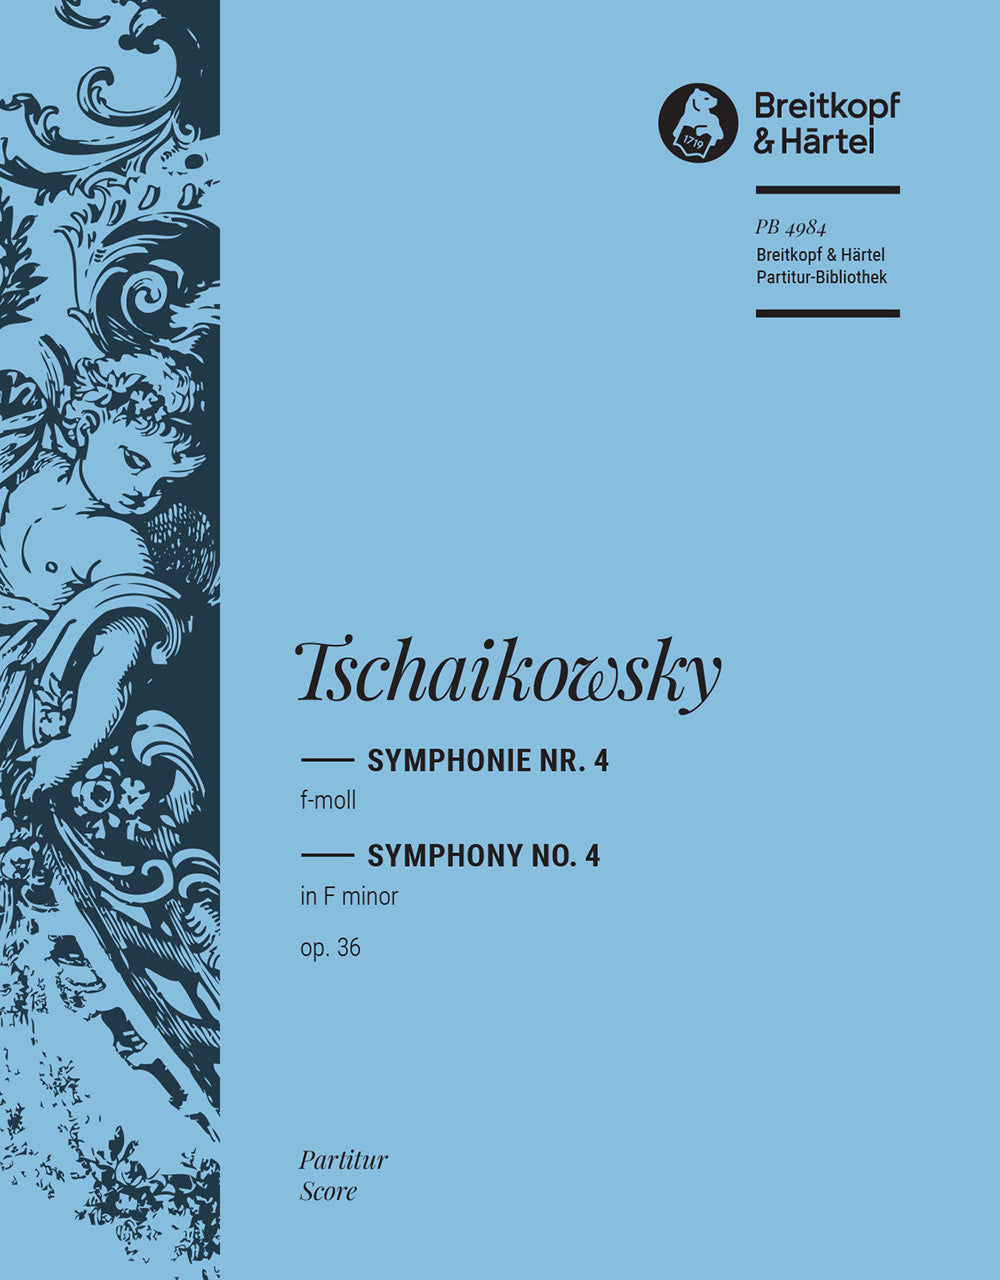 Tchaikovsky Symphony No. 4 in F minor Op. 36